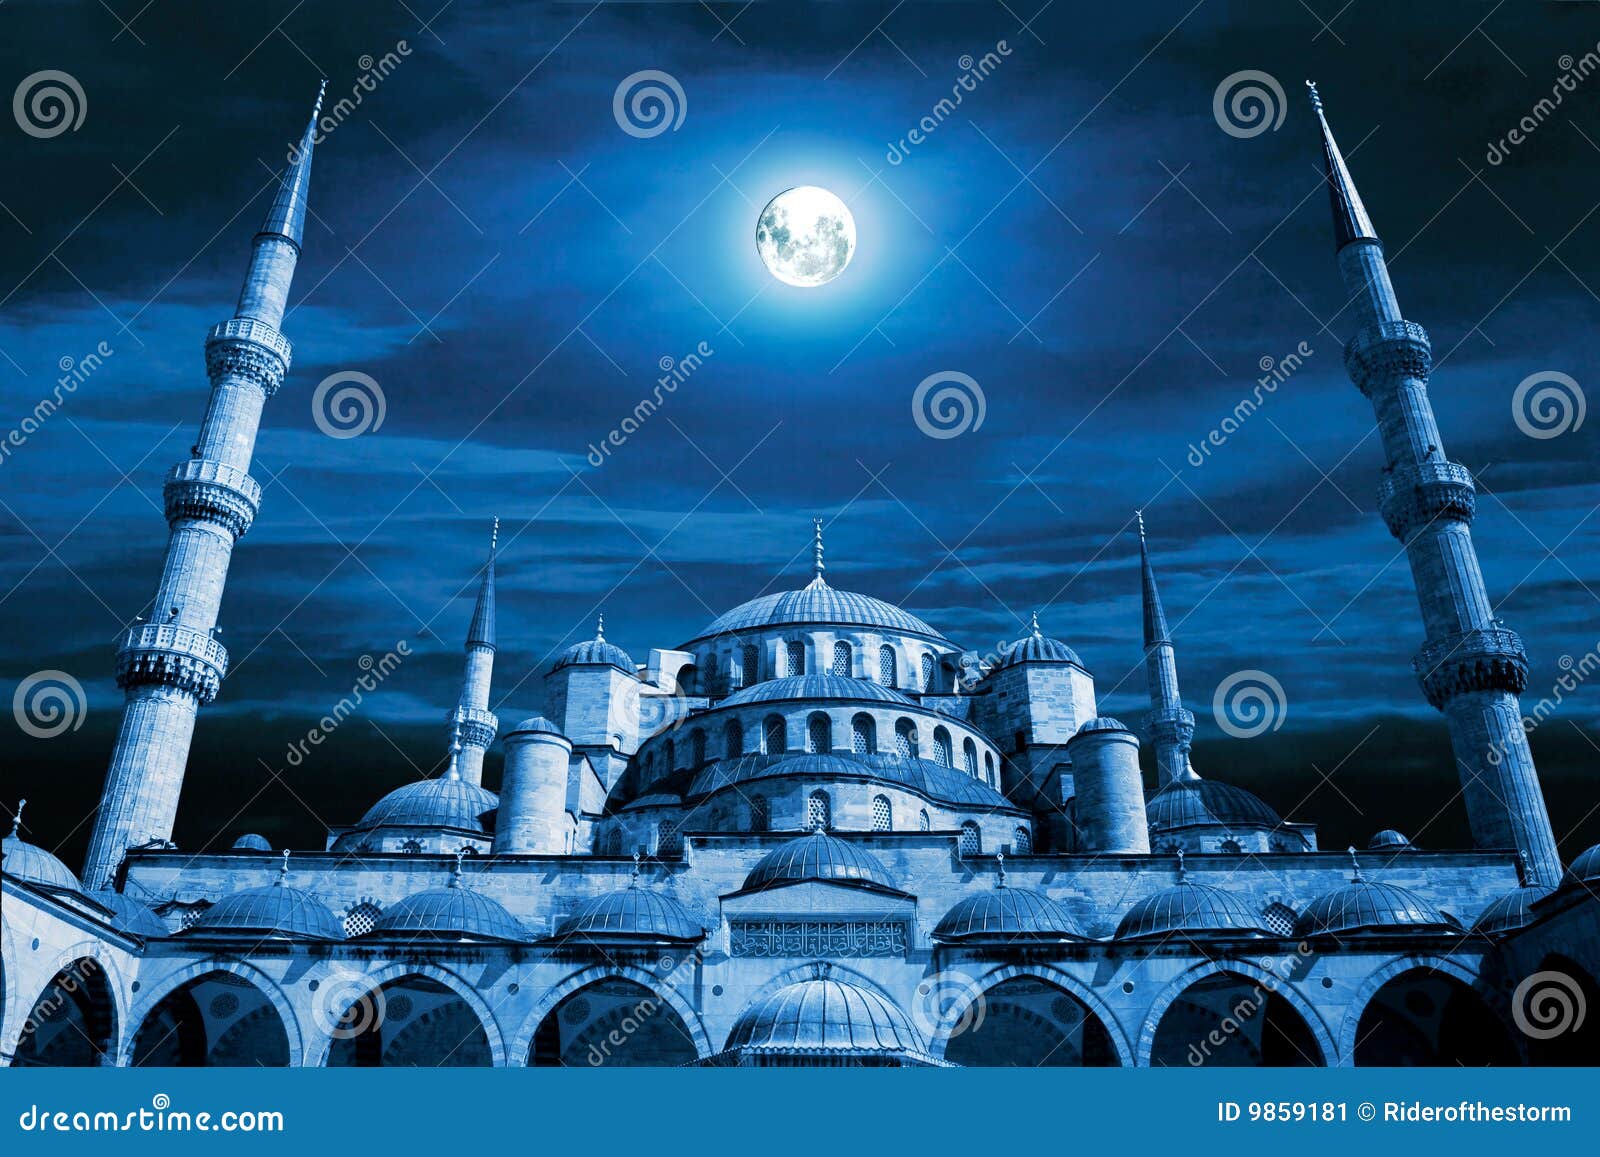 mosque night dreams